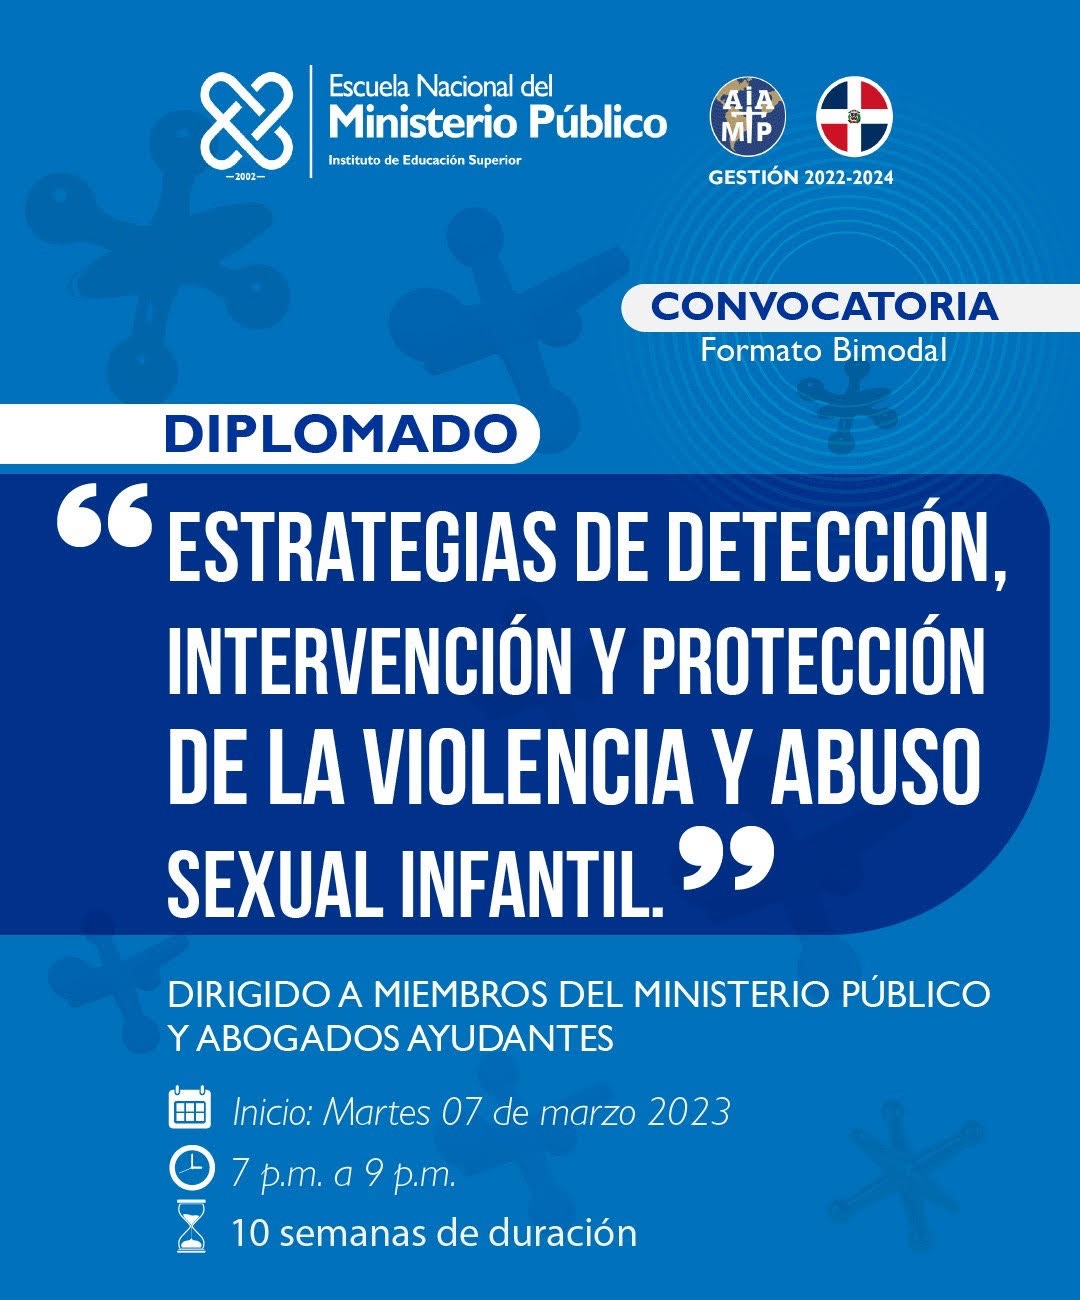 ESTRATEGIAS DE DETECCION,INTERVENCION Y PROTECCION DE LA VIOLENCIA Y ABUSO SEXUAL INFANTIL